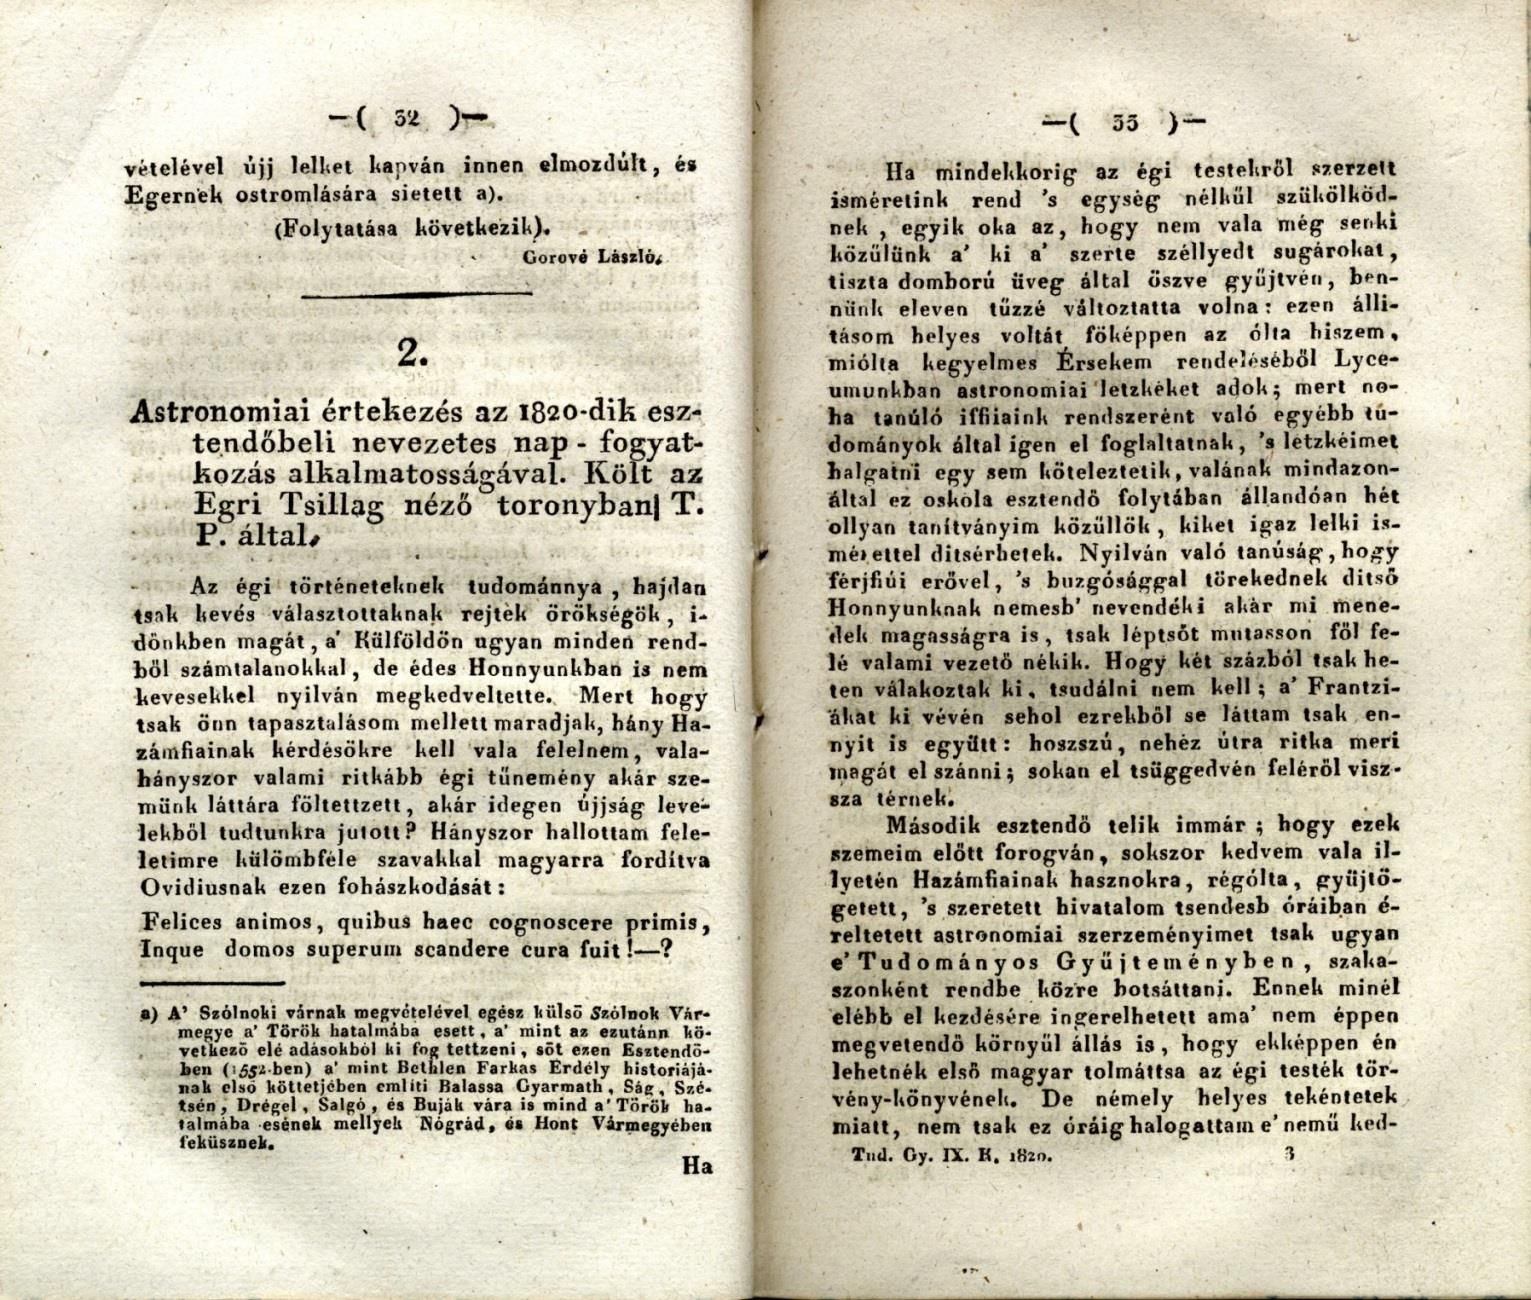 Egerben készült értekezése a Tudományos Gyűjteményben jelent meg 1820-ban.